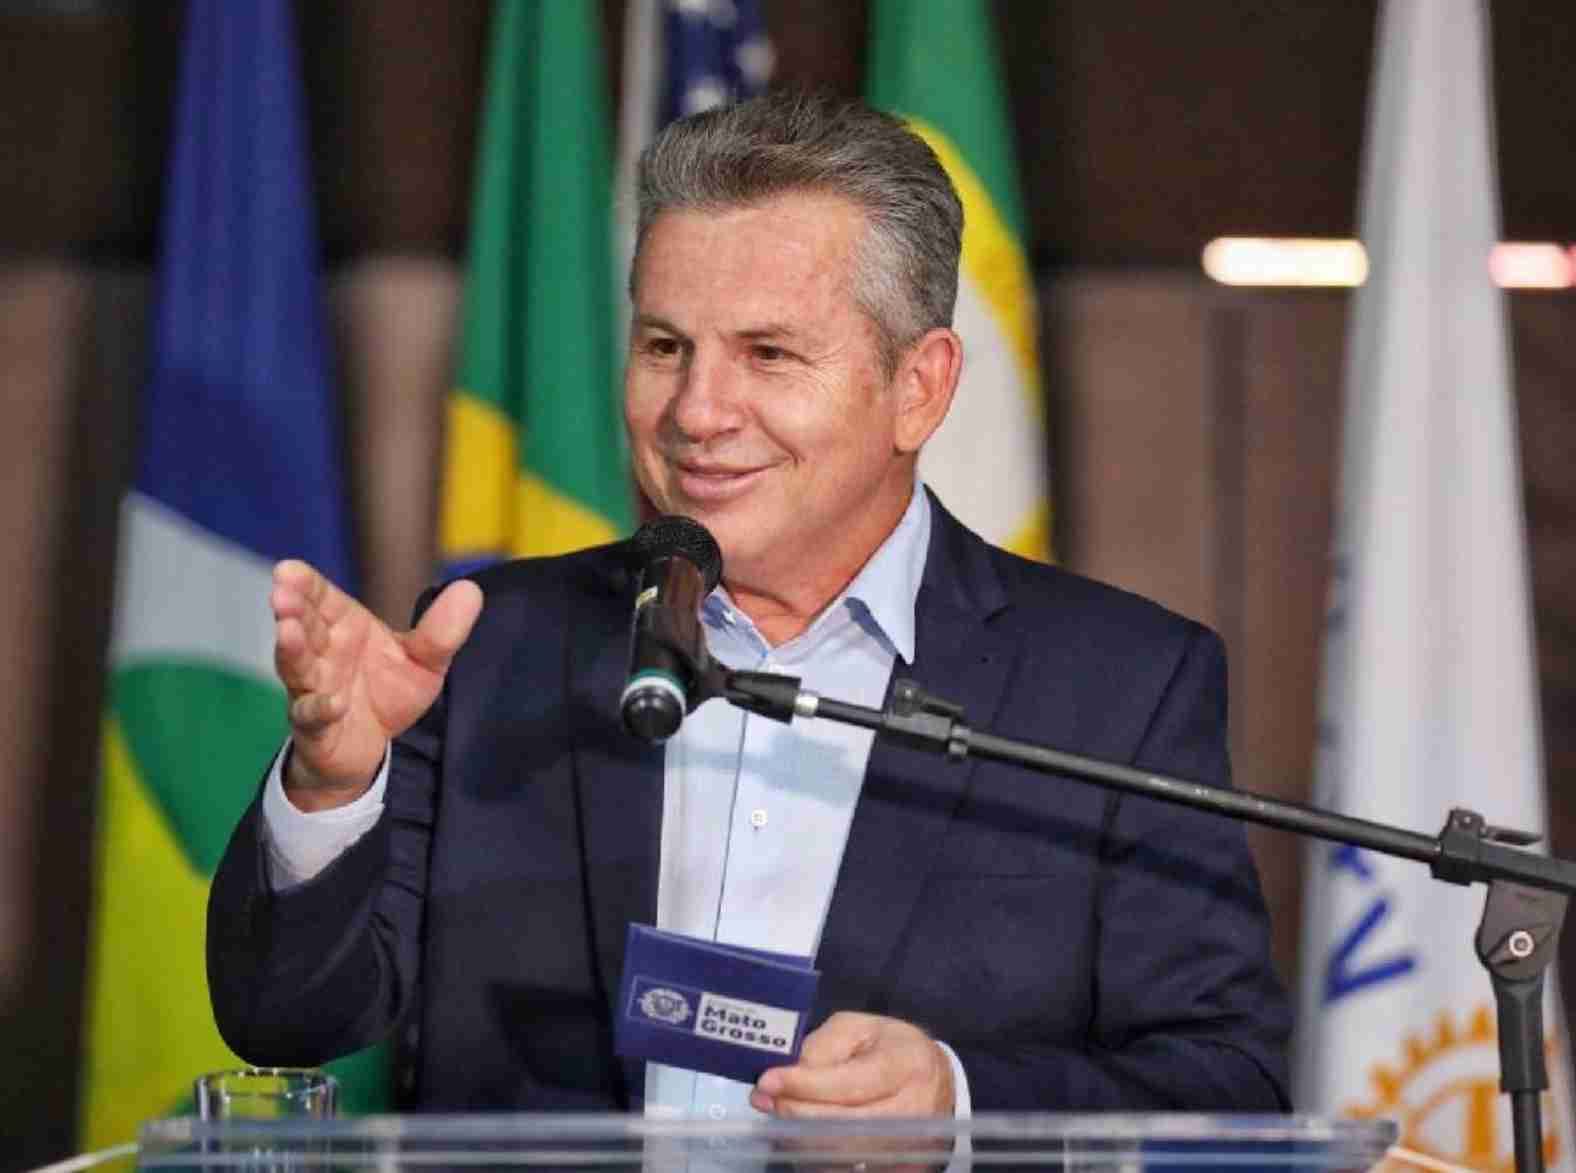 Gestão fiscal responsável: A decisão de Mato Grosso contra o aumento de impostos